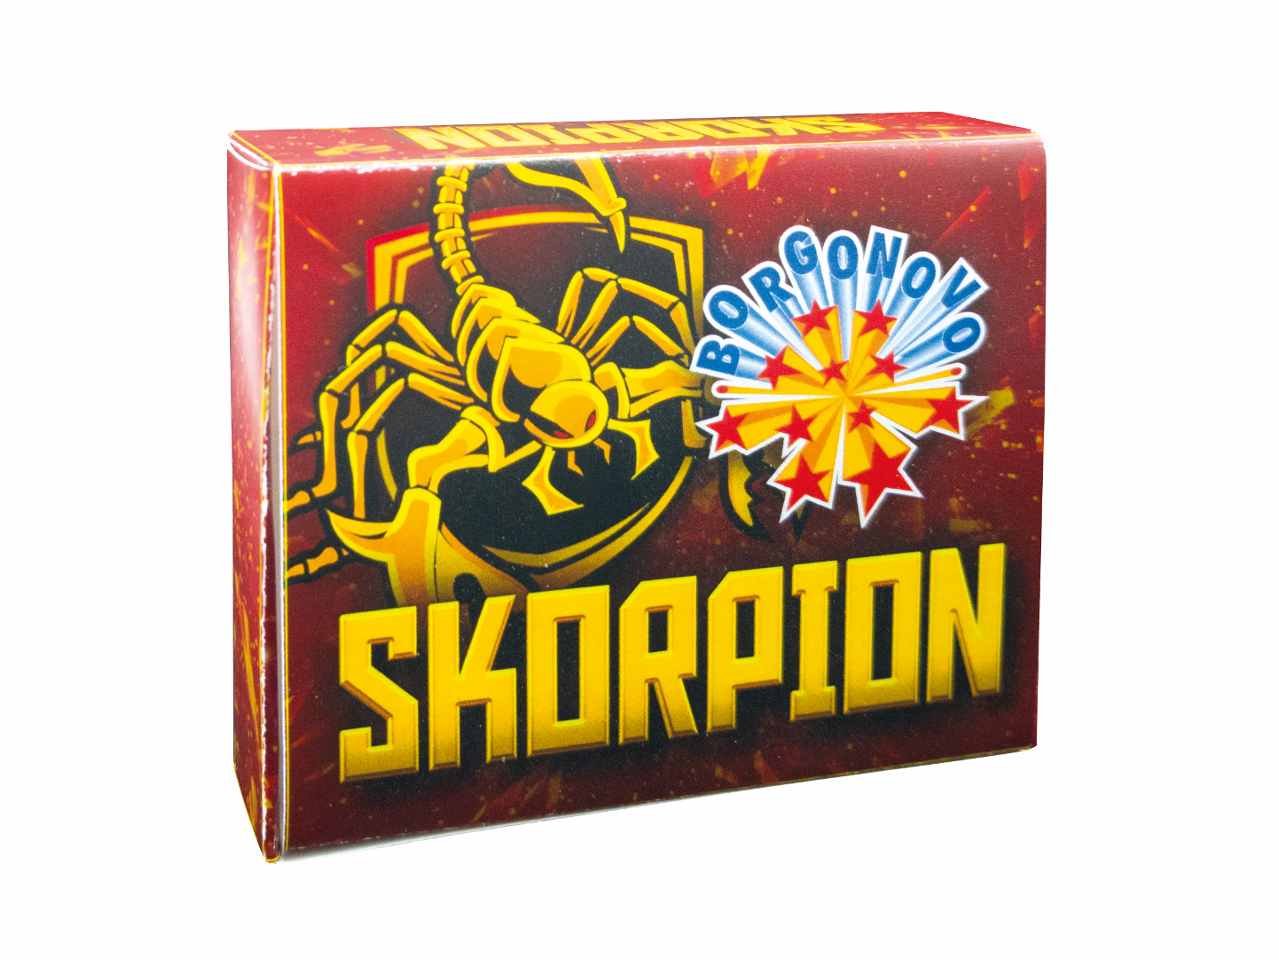 Petardi skorpion - la confezione comprende 24 box da 20 pezzi